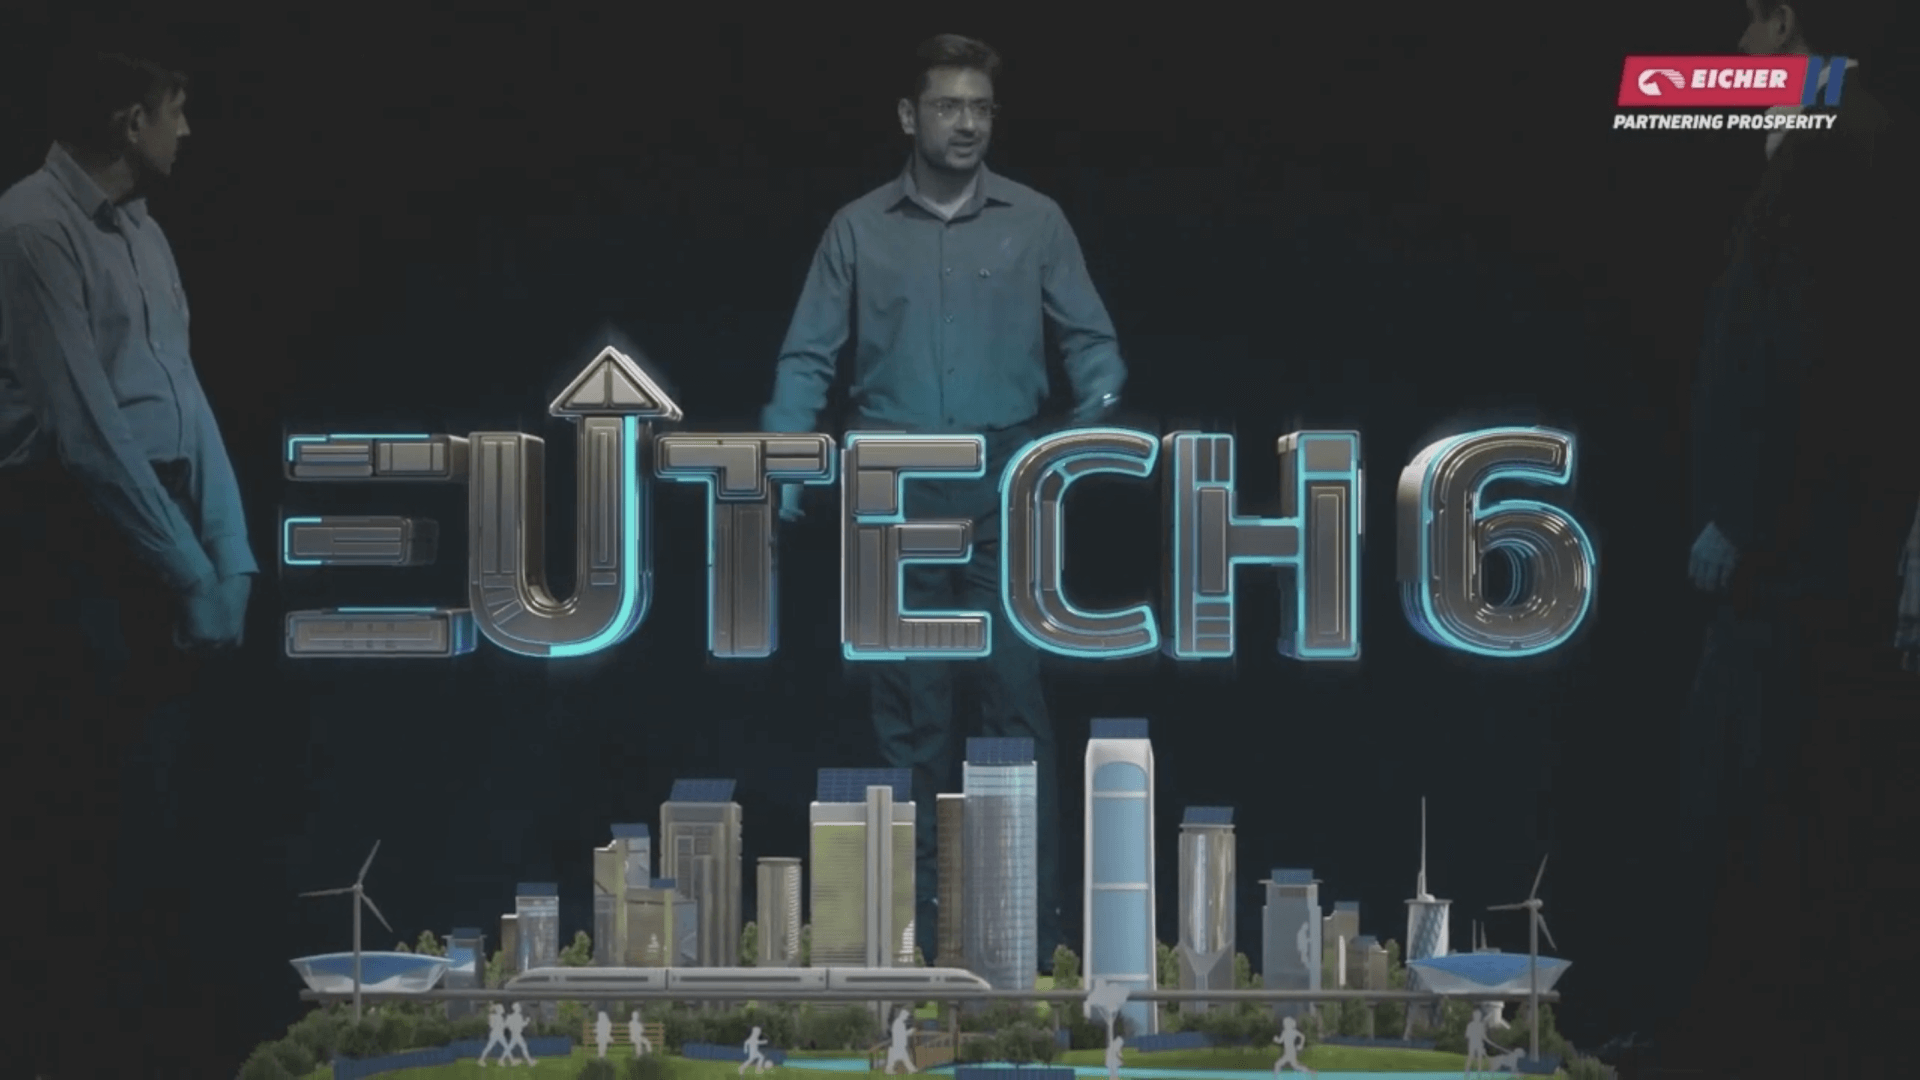 Eutech6 video